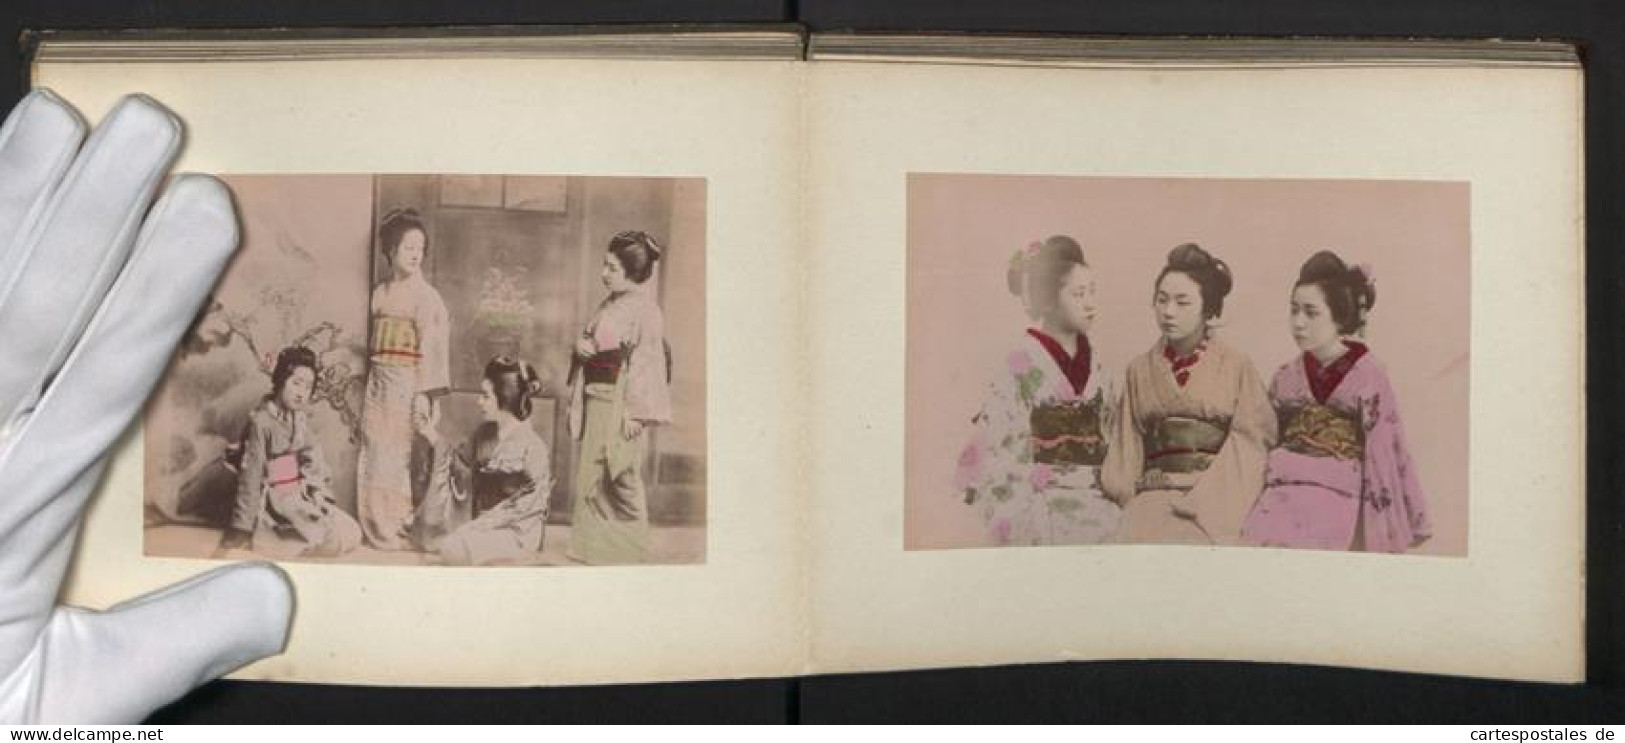 Fotoalbum mit 50 Fotografien, Japan, Geisha beim Baden, Teezeremonie, Kimono, Tracht, Honmoku, Yokohama, Hodogaya Hako 